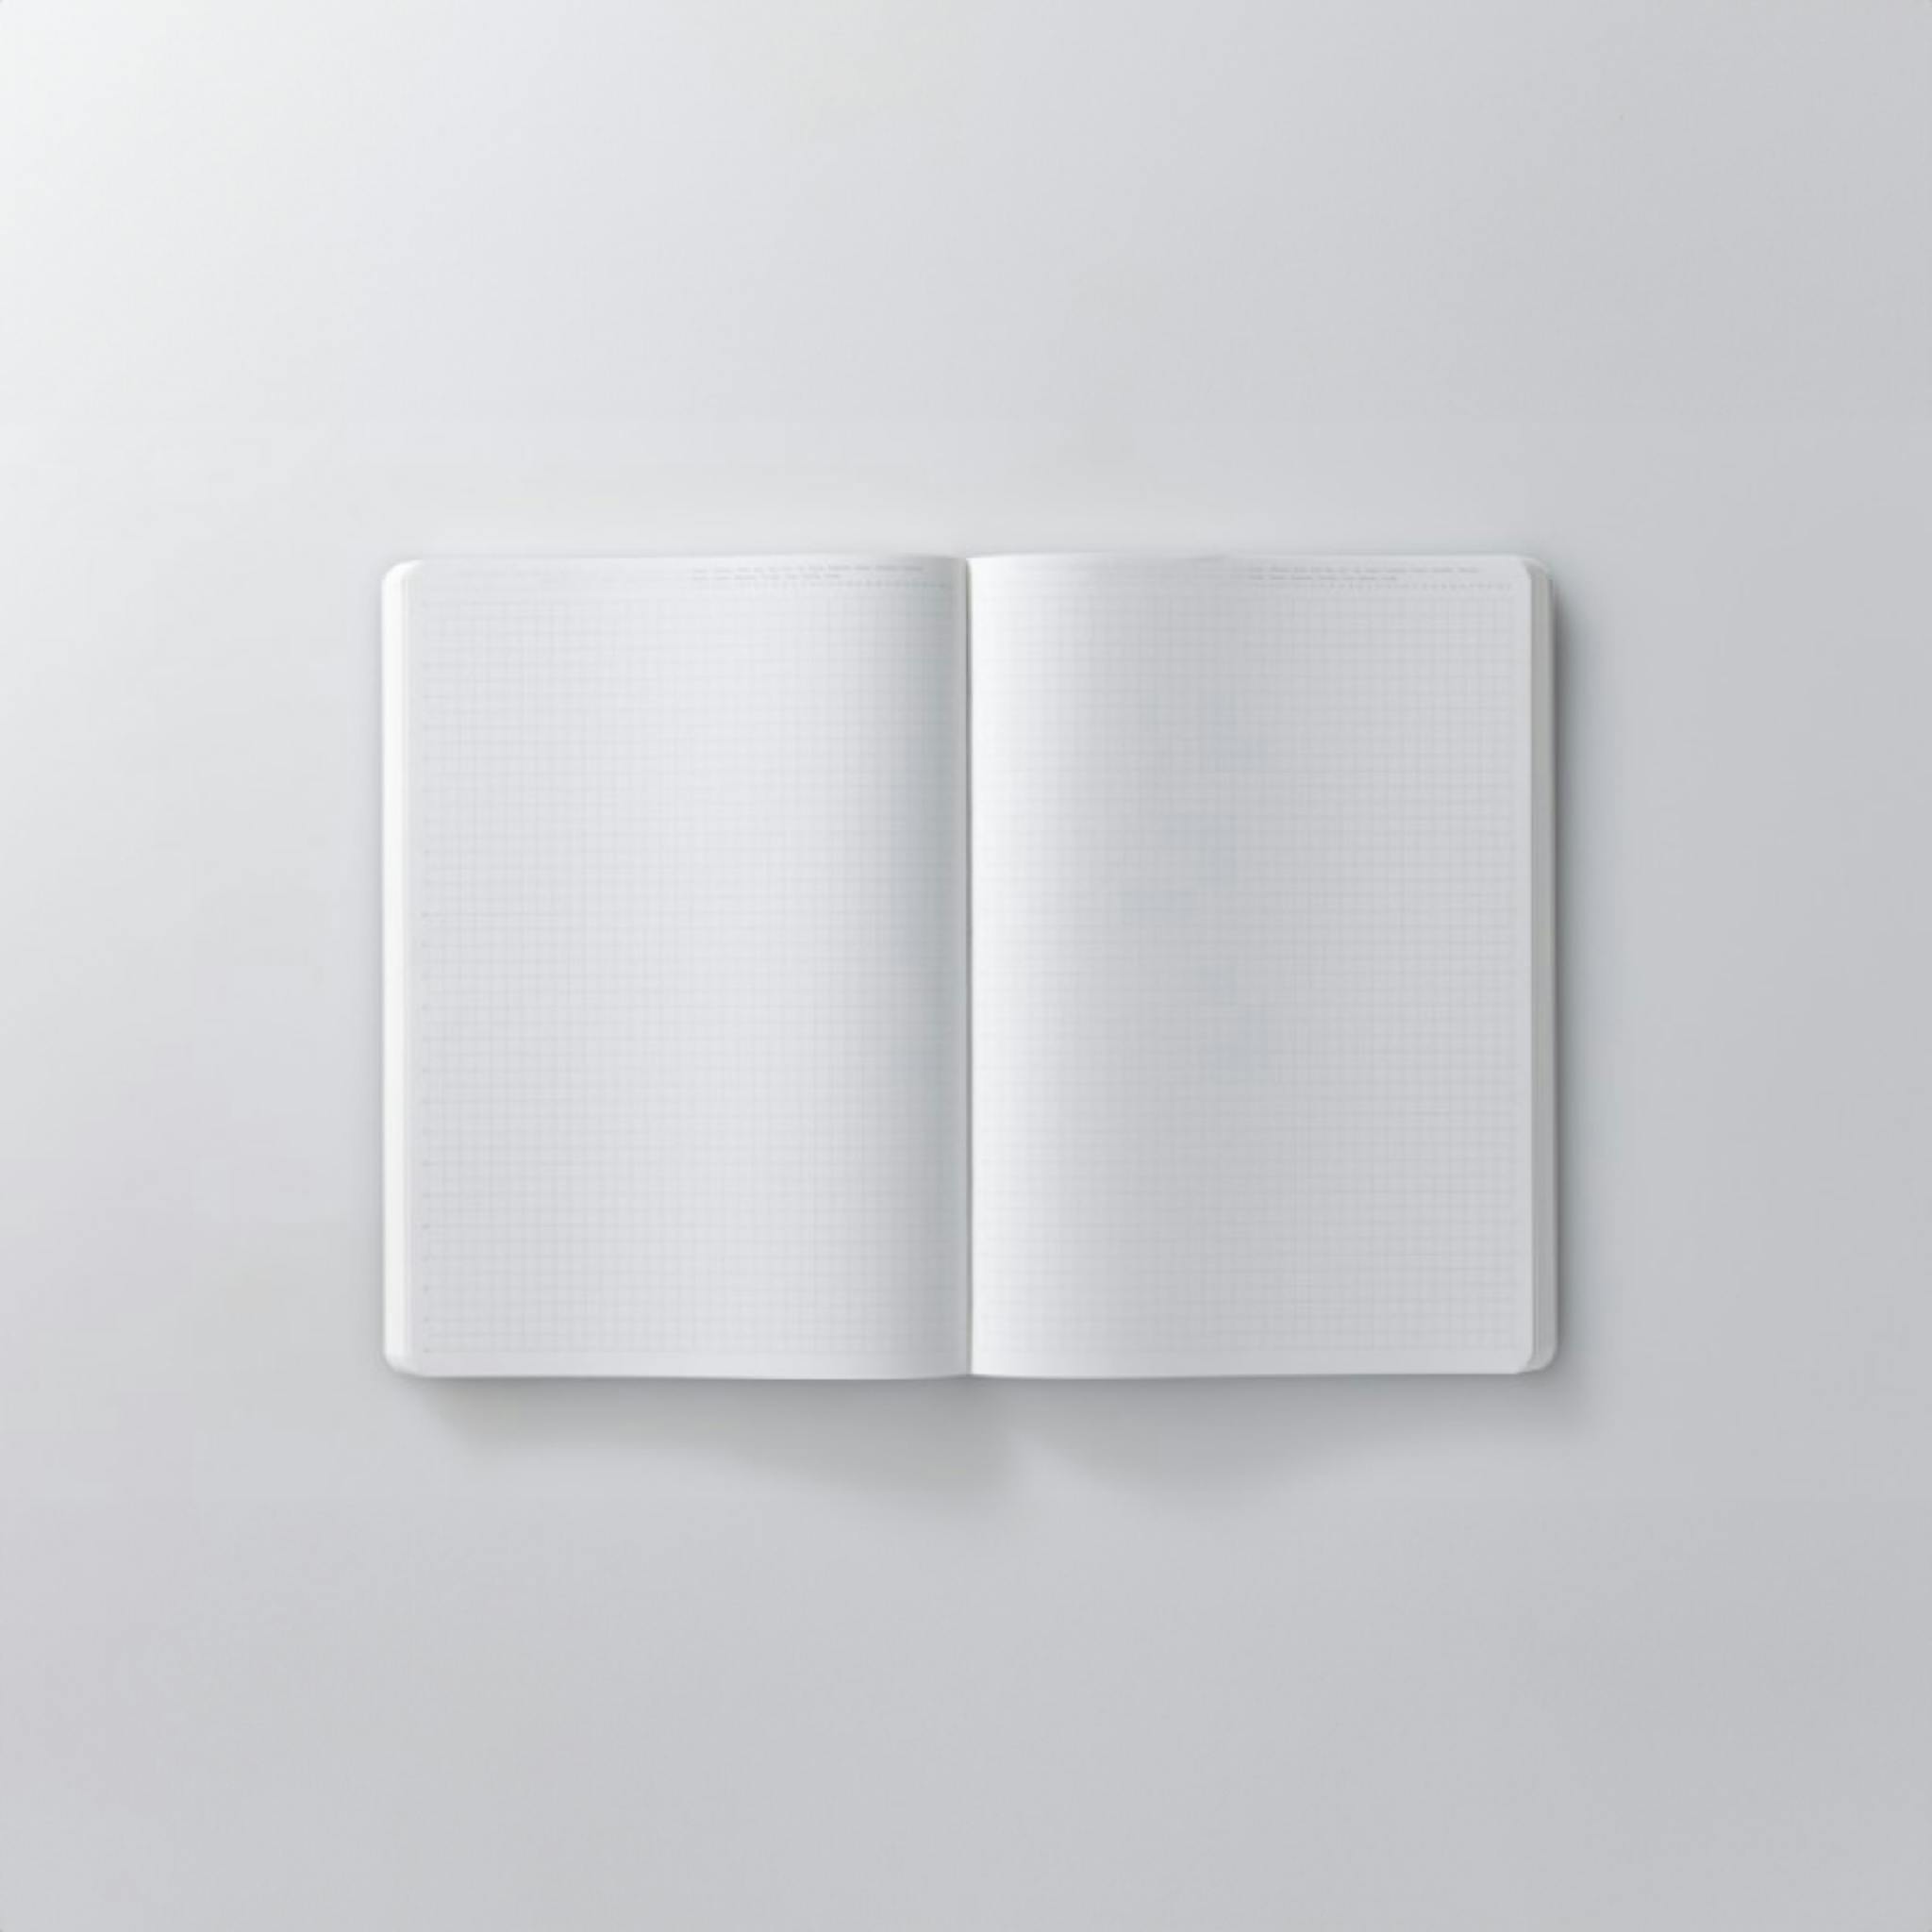 An open blank notebook.